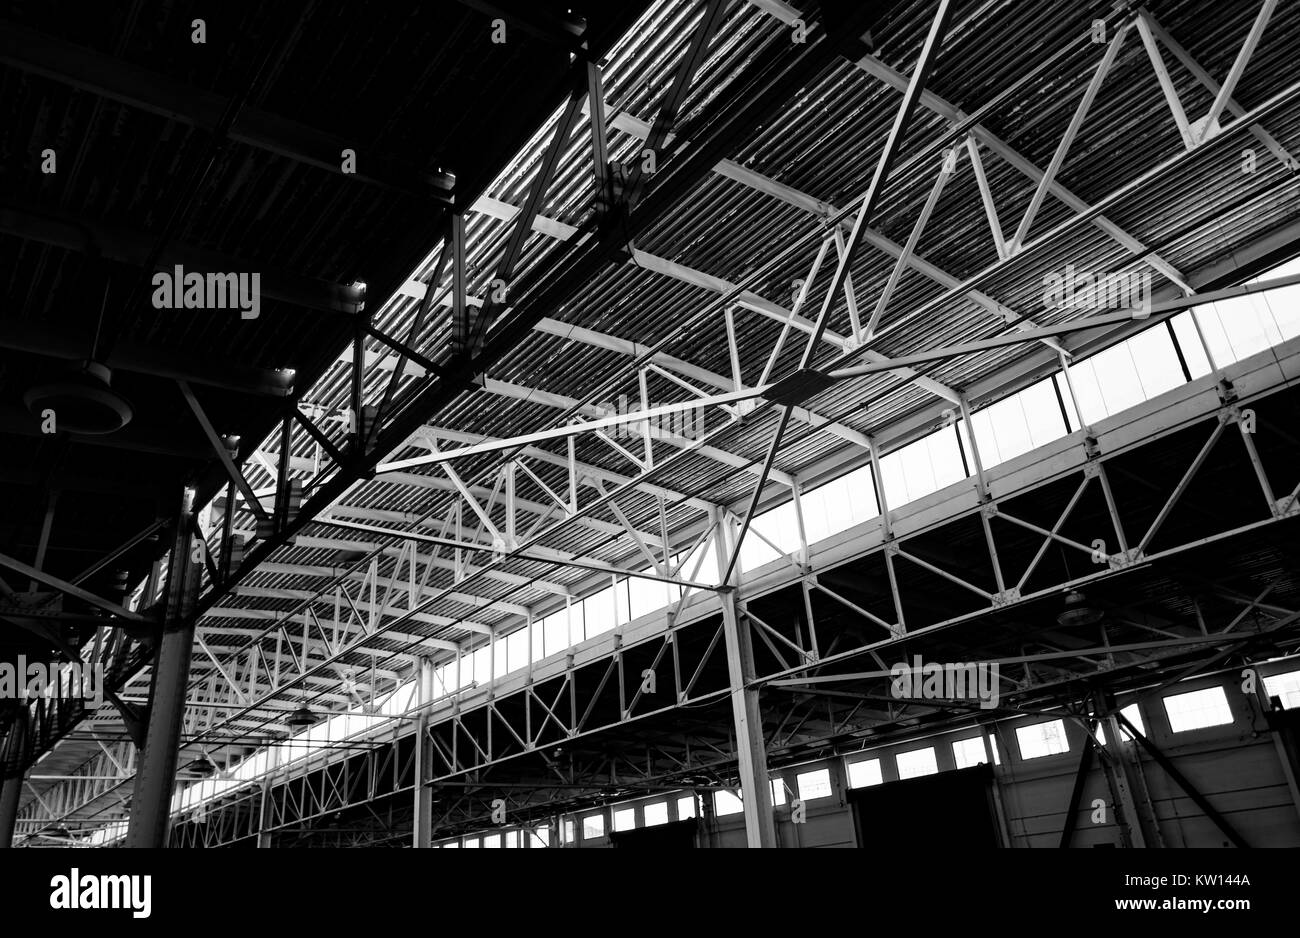 Image en noir et blanc de la complexité des accolades métalliques soutenant le toit de Pier 48, un hangar, un ancien hangar de stockage au Port de San Francisco, maintenant utilisé comme un terrain de stationnement, San Francisco, Californie, 2016. Banque D'Images